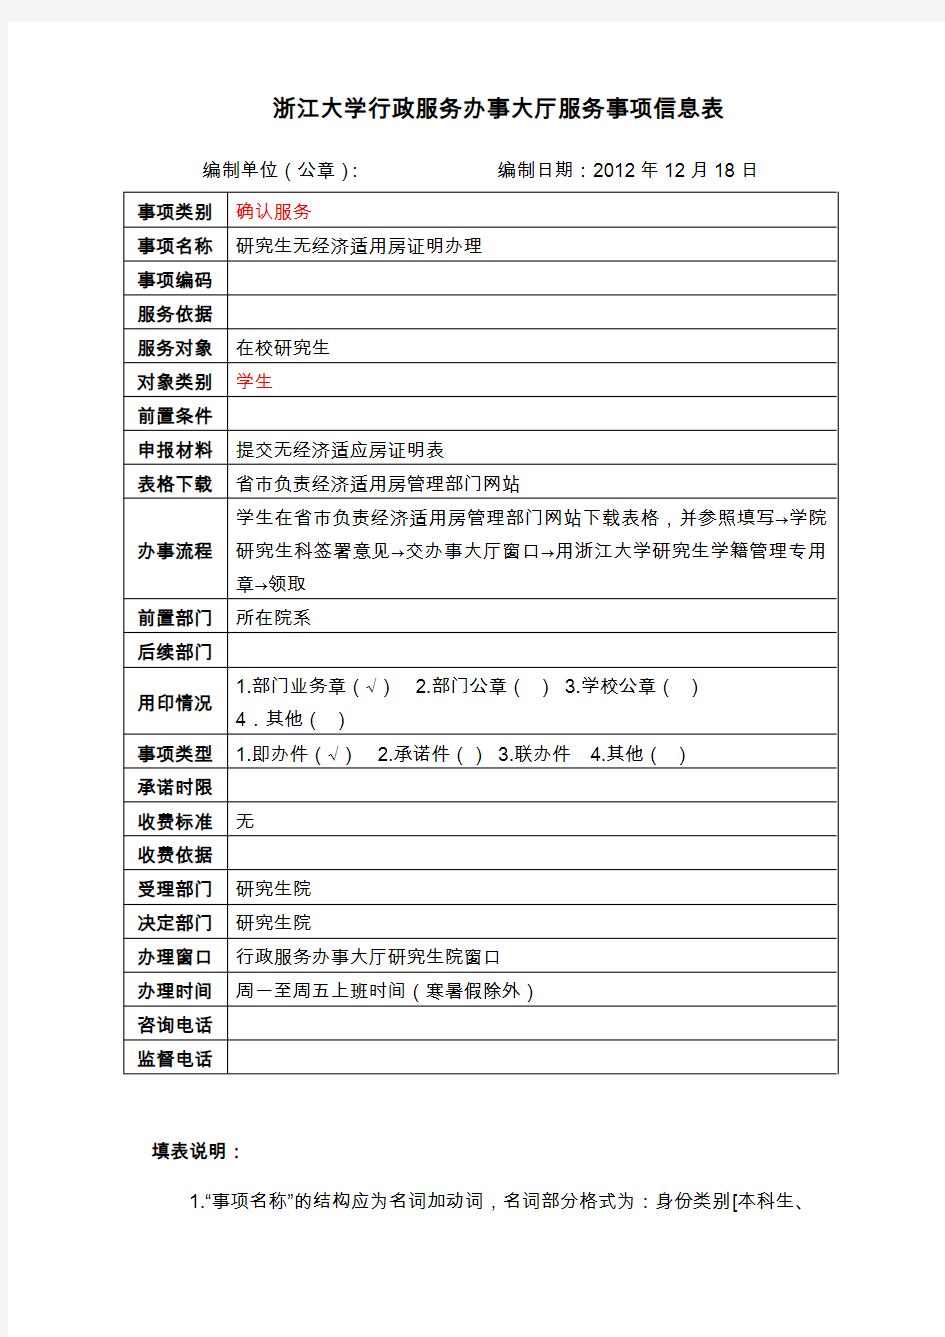 浙江大学行政服务办事大厅服务事项信息表